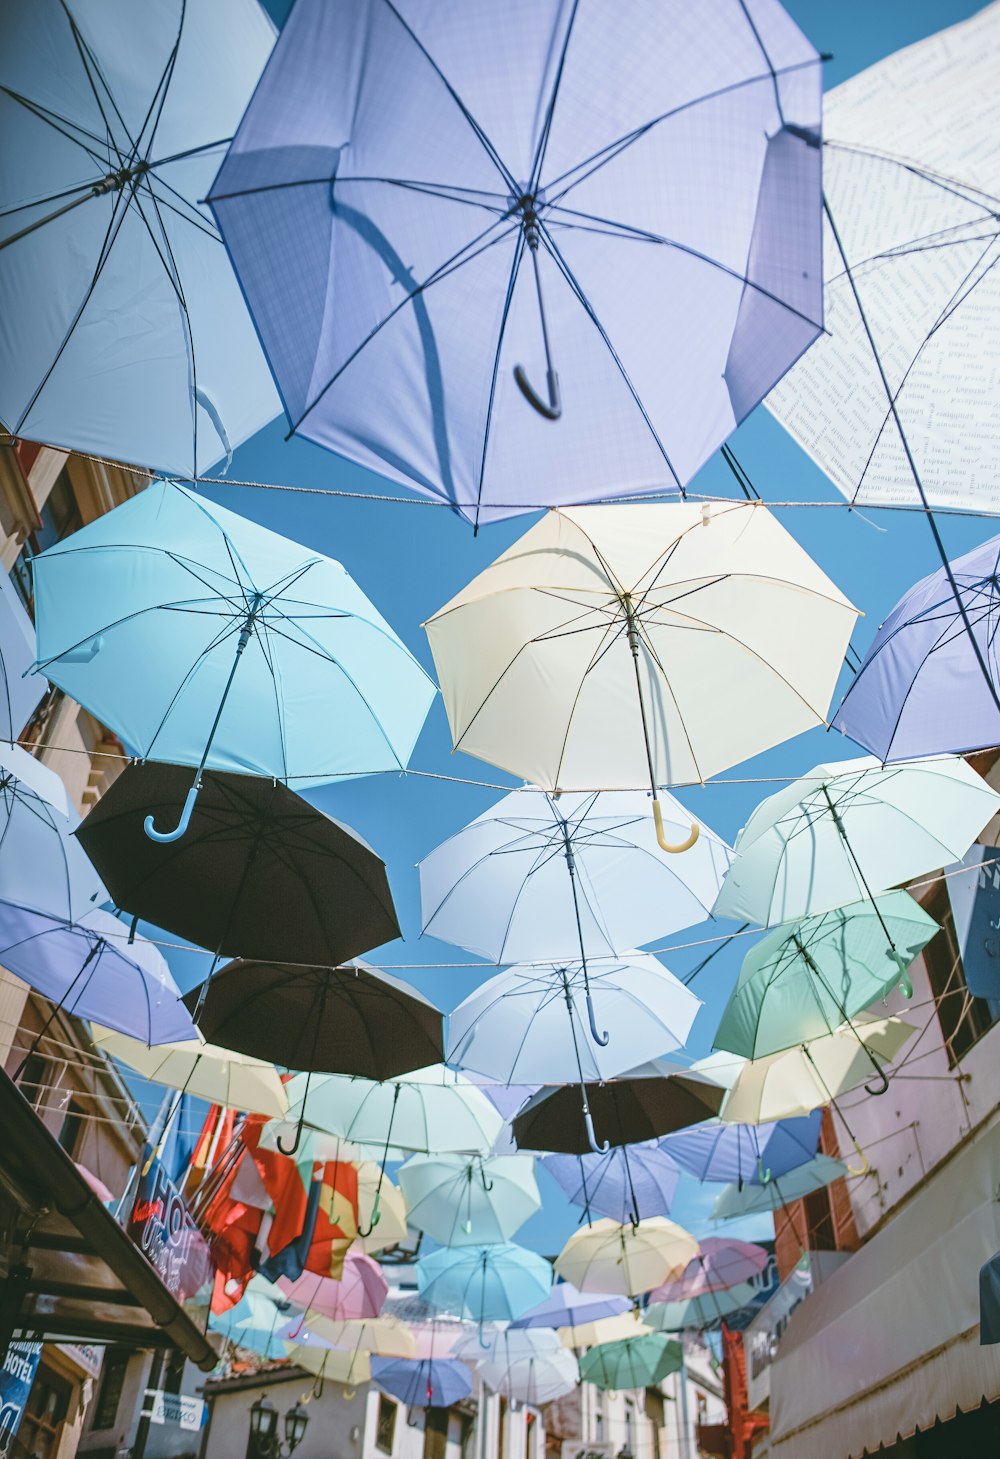 verschiedenfarbige Regenschirme, die tagsüber unter blauem Himmel an Drähten hingen